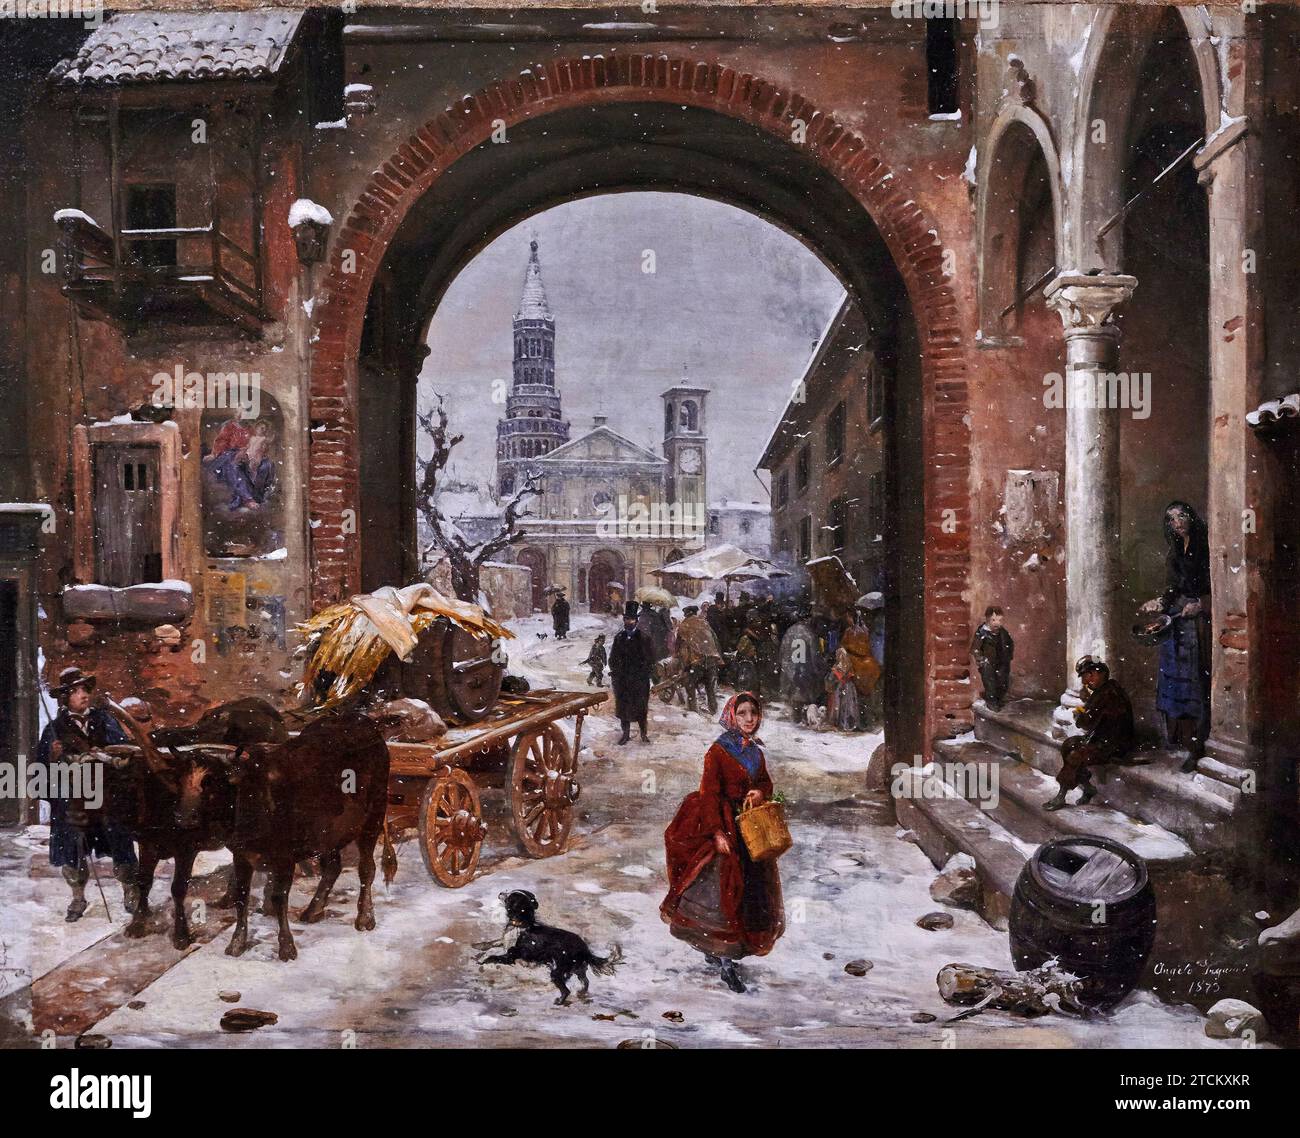 Mercato invernale di fronte all’ Abbazia di Chiaravalle  - olio su tela - Angelo Inganni - 1873 - collezione privata Stock Photo